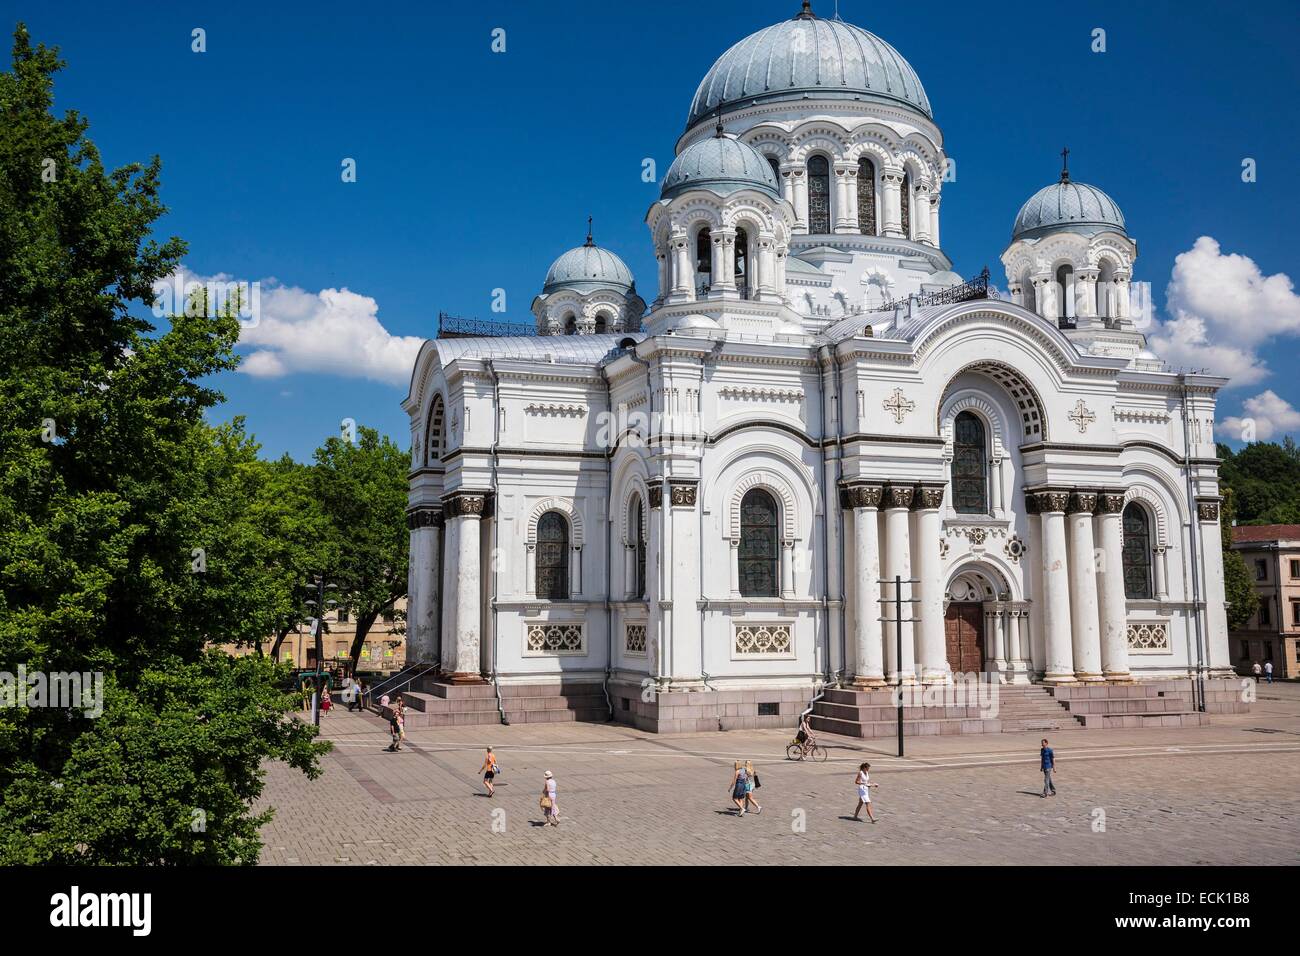 La Lituanie (pays baltes), comté de Kaunas, Kaunas, l'église de Saint Michel Archange ou l'église de garnison, la place de l'indépendance Banque D'Images